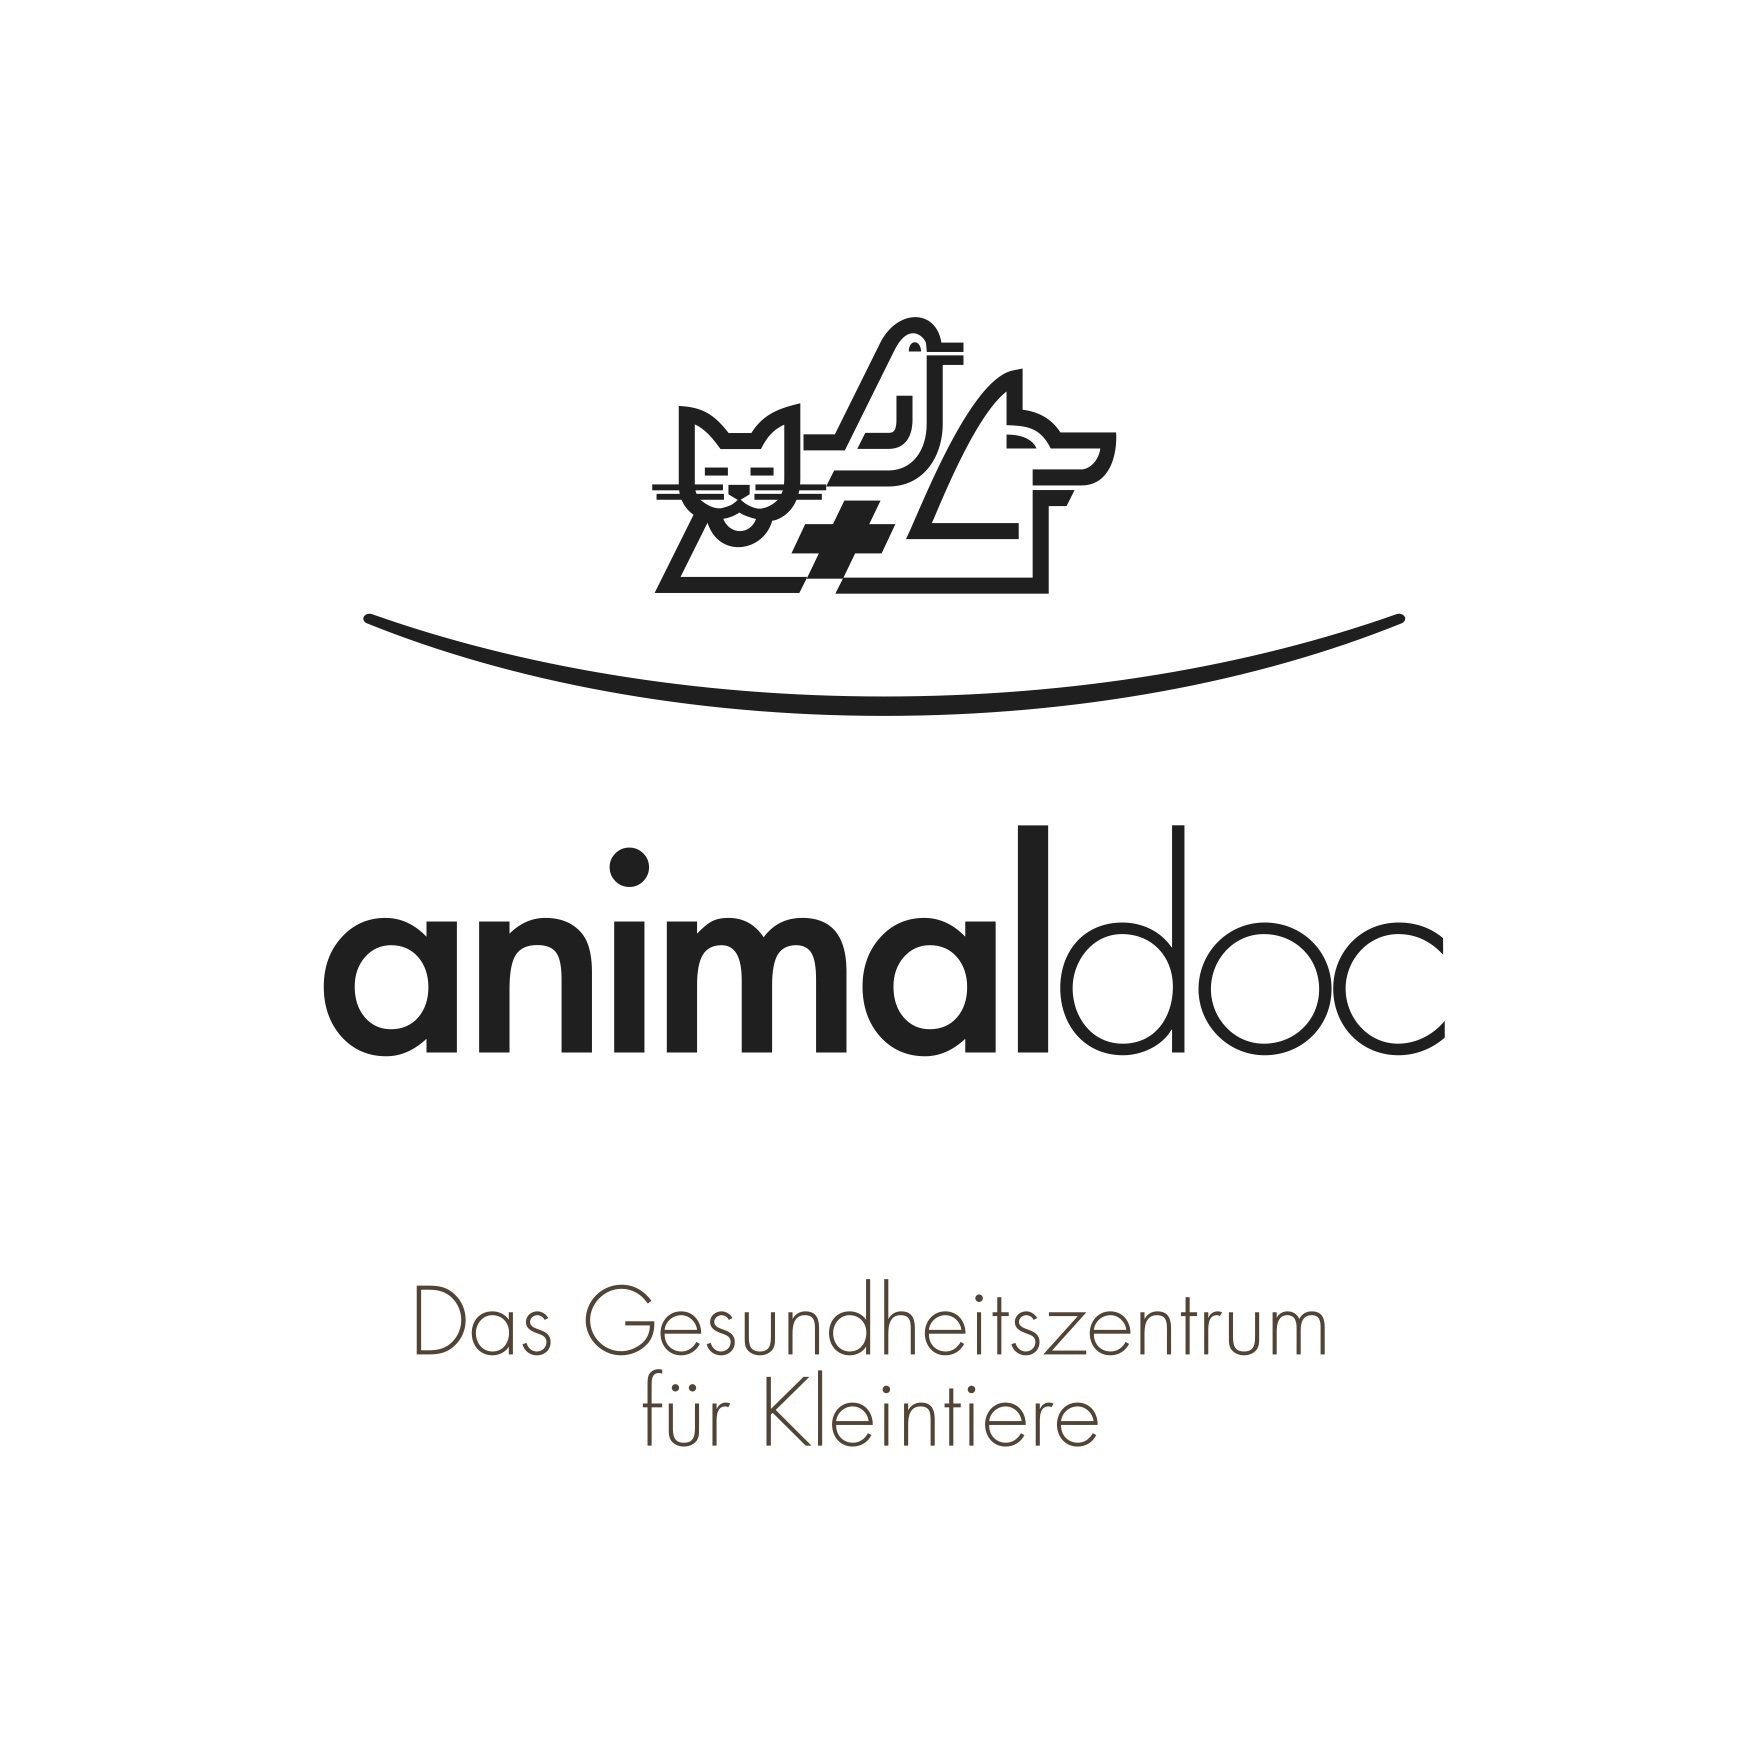 animaldoc AG - Das Gesundheitszentrum für Kleintiere Logo